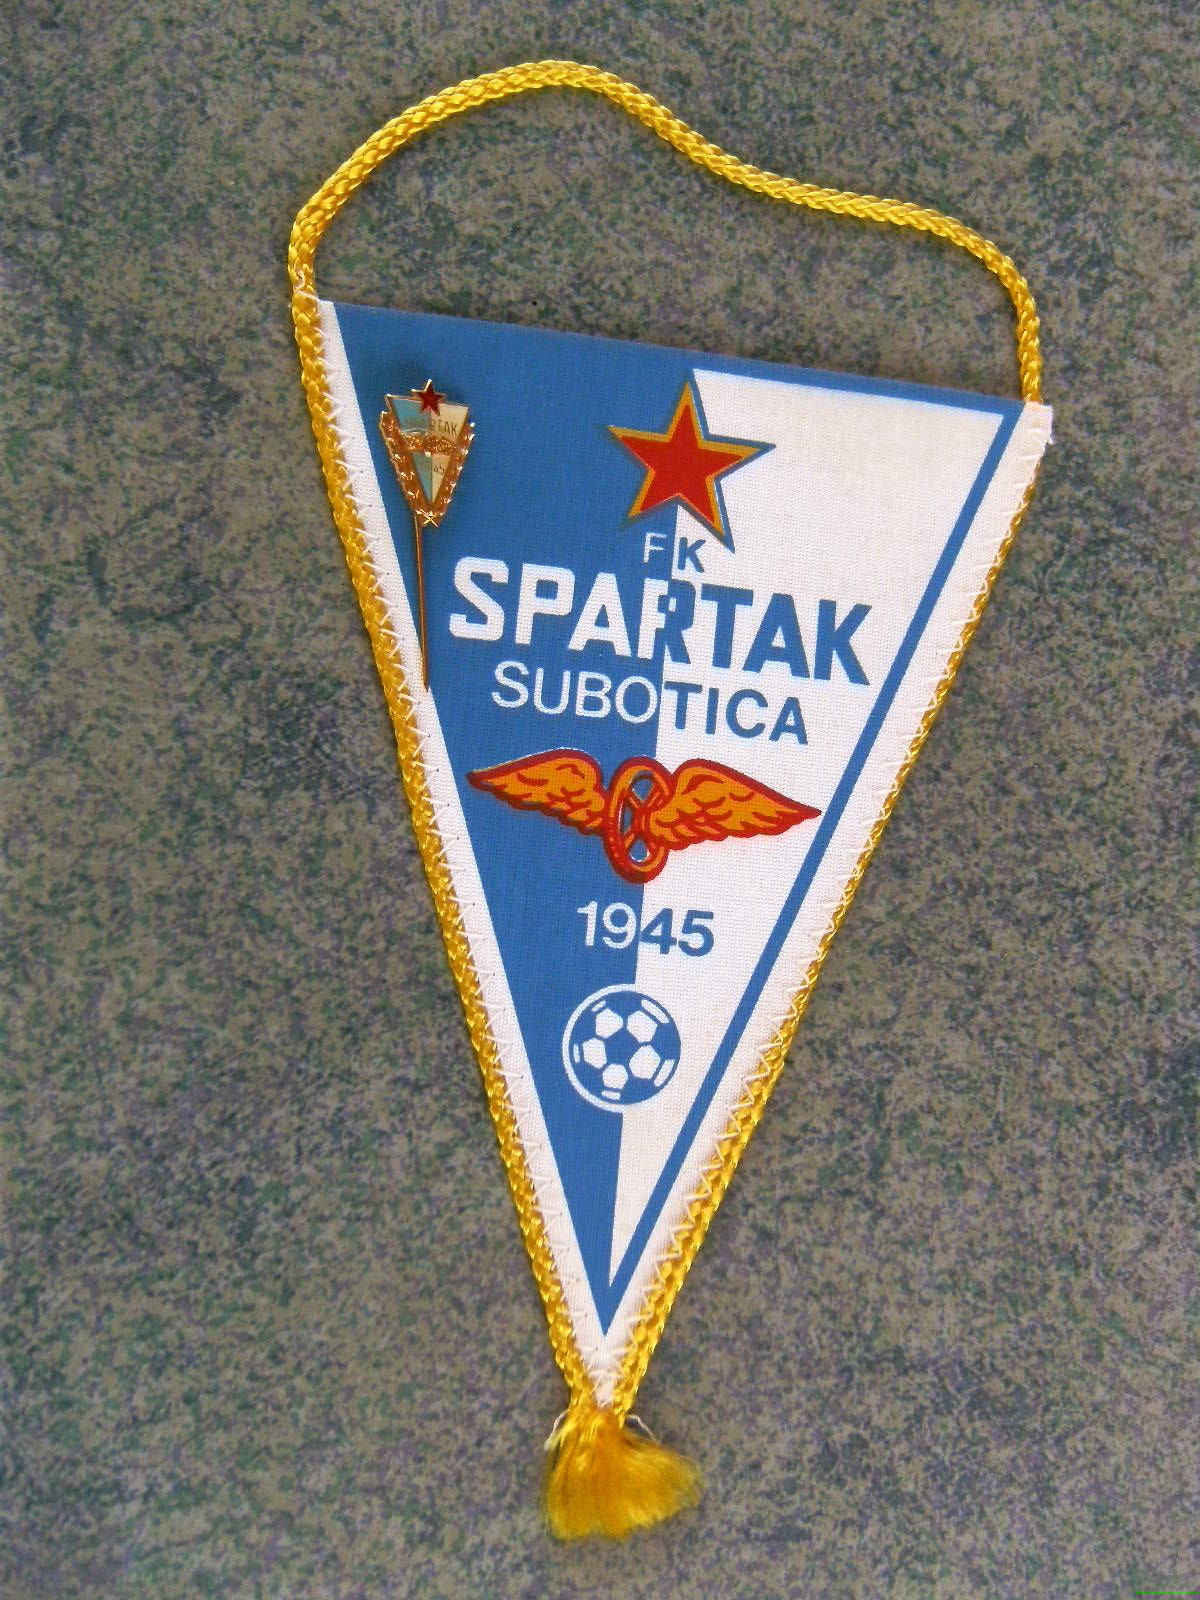 Fk Spartak Subotica